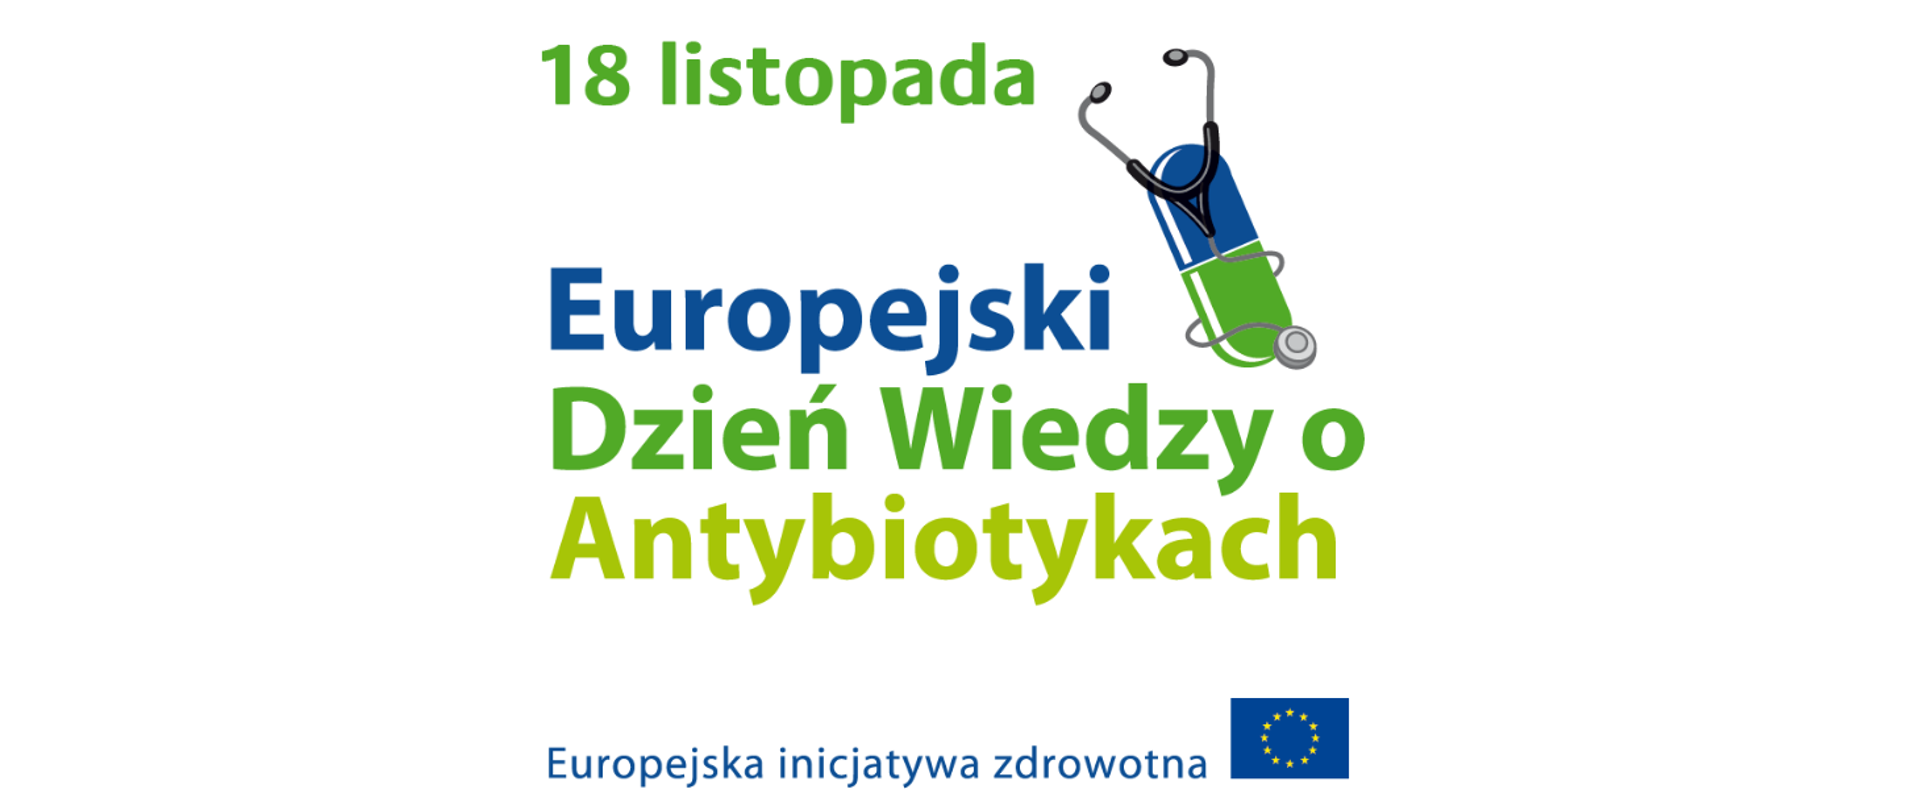 18 listopada. Europejski Dzień Wiedzy o Antybiotykach. Europejska inicjatywa zdrowotna. Rysunek pigułki i stetoskopu, flaga Unii Europejskiej